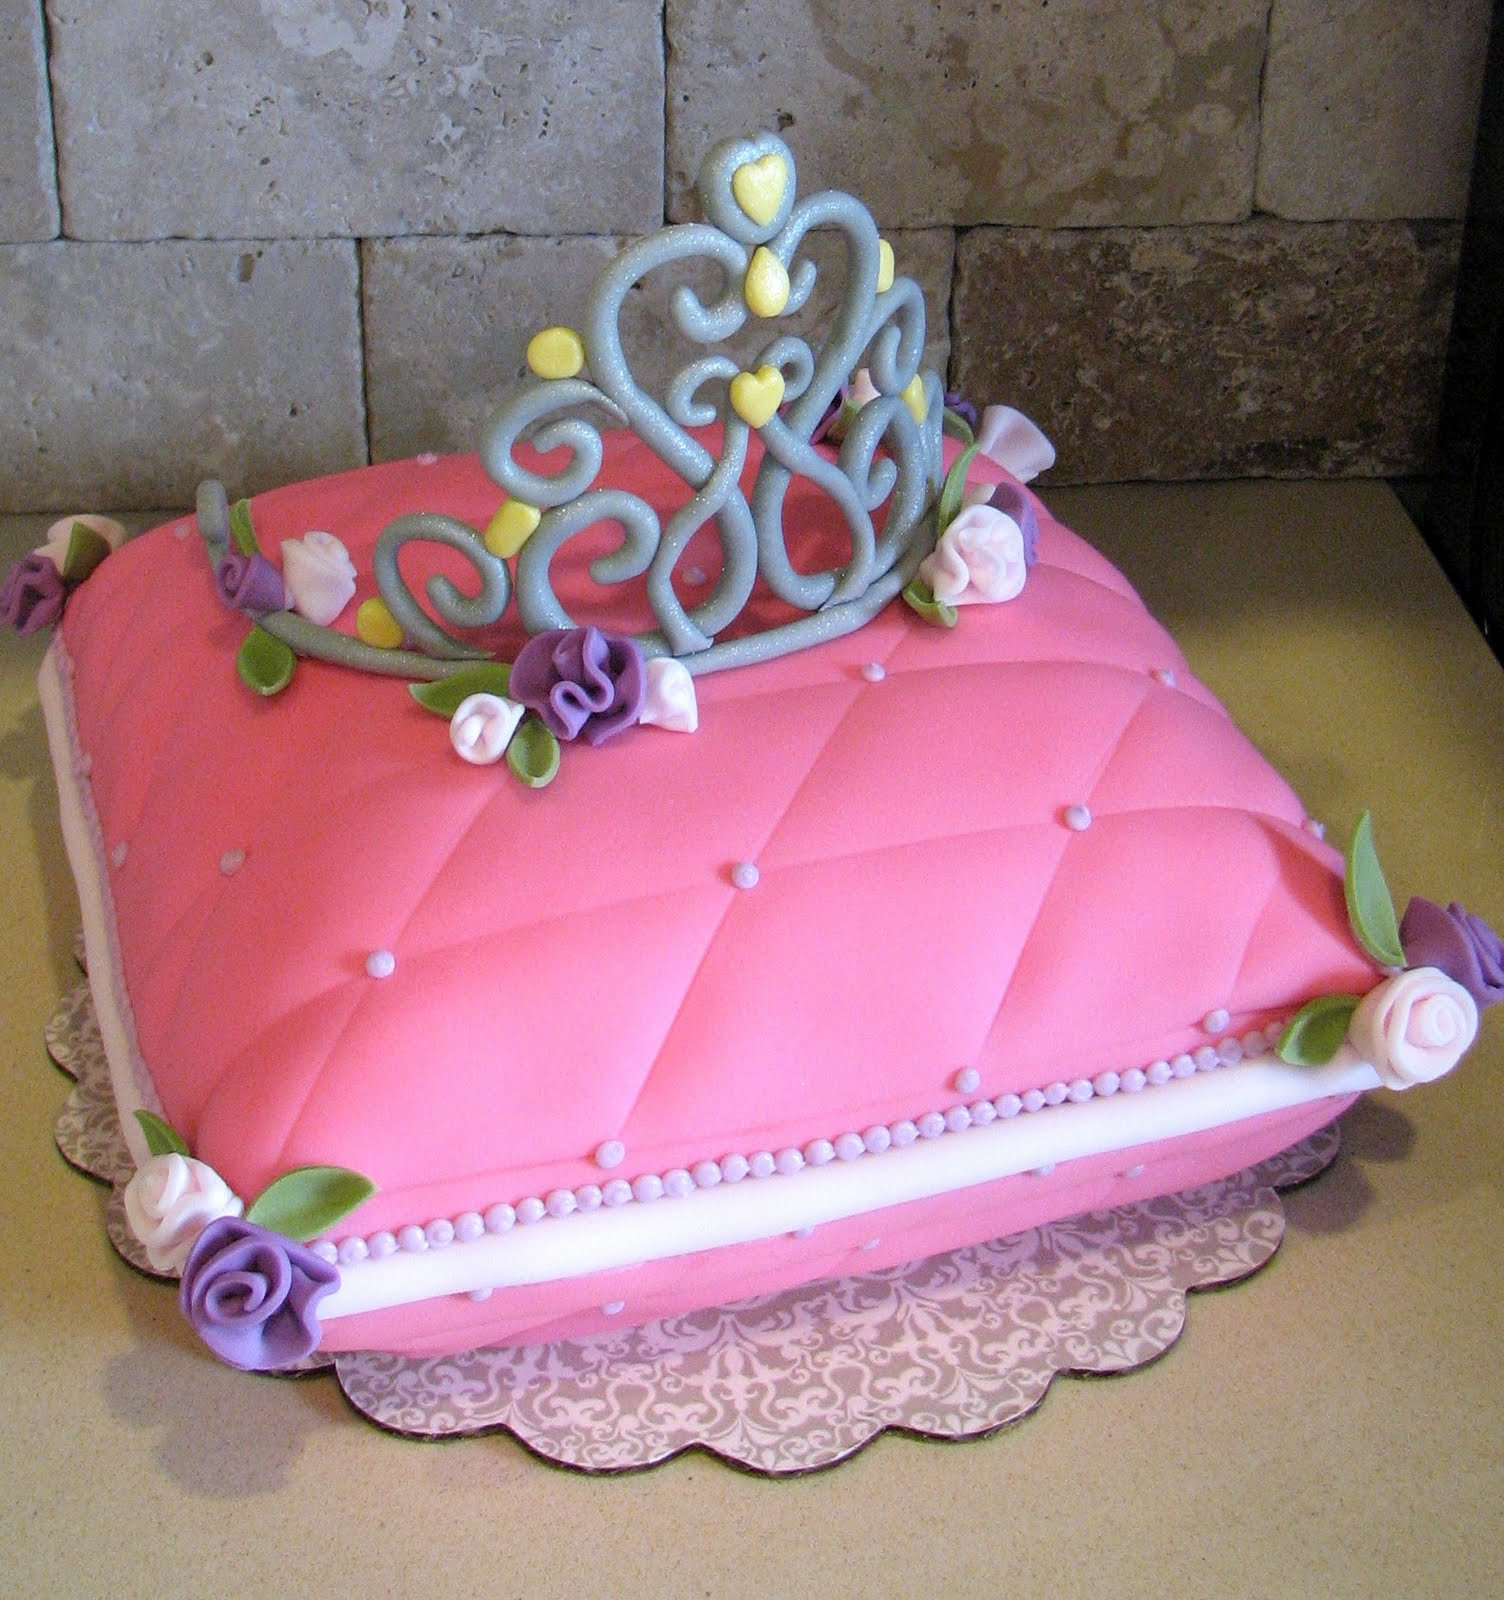 Costco Birthday Cakes Designs
 Costco Birthday Cakes